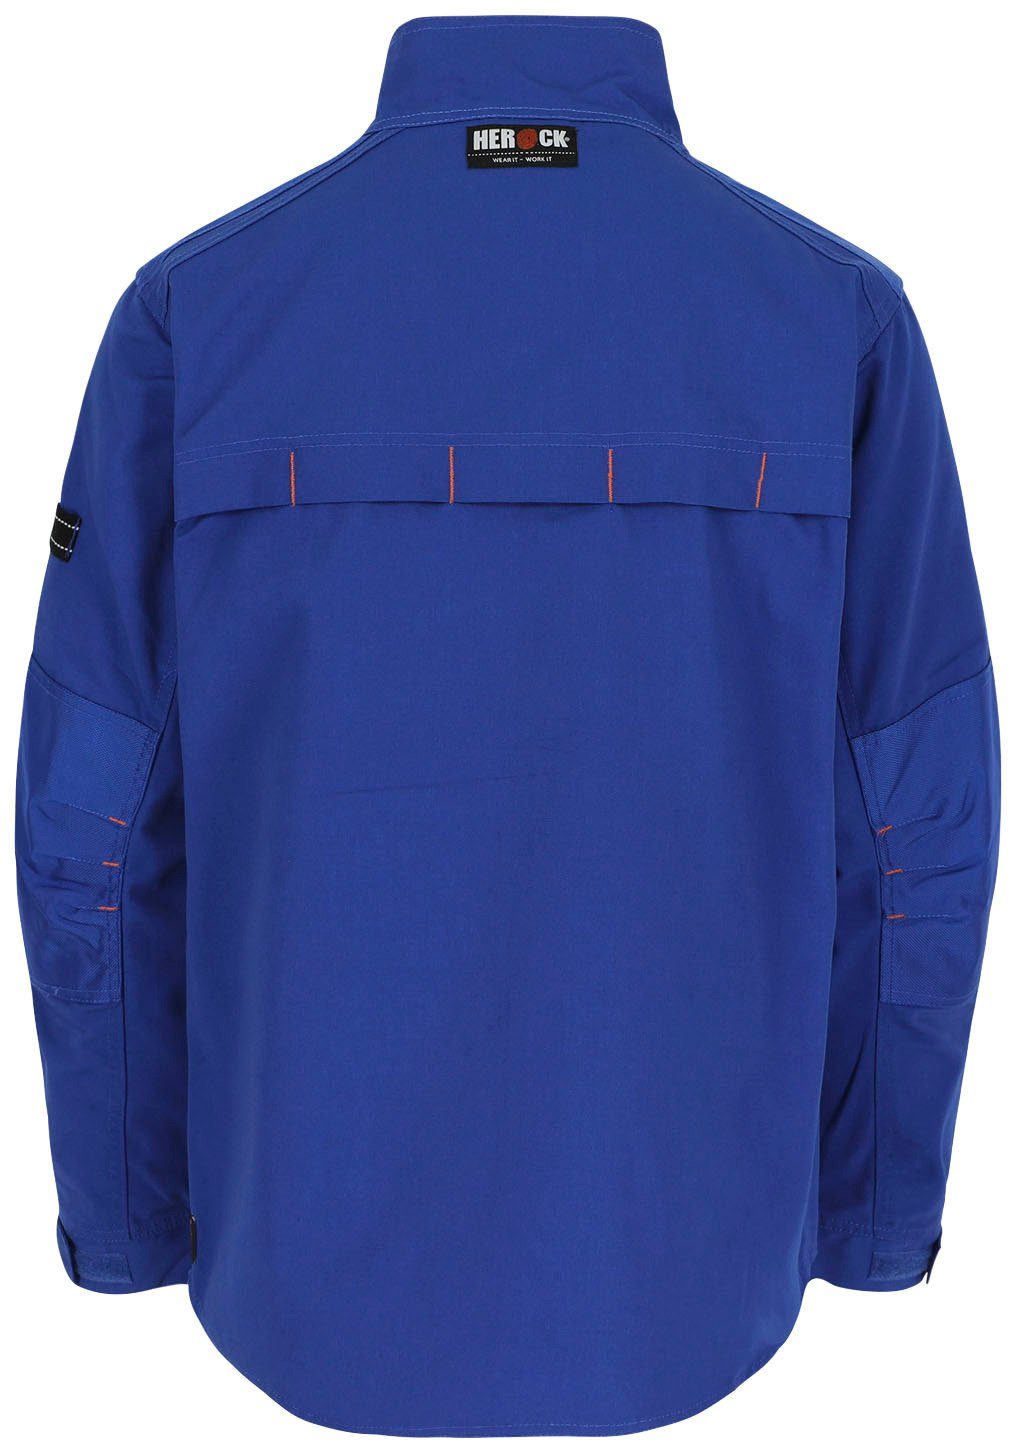 - blau Arbeitsjacke robust - - Taschen Herock Jacke Wasserabweisend verstellbare Anzar Bündchen 7